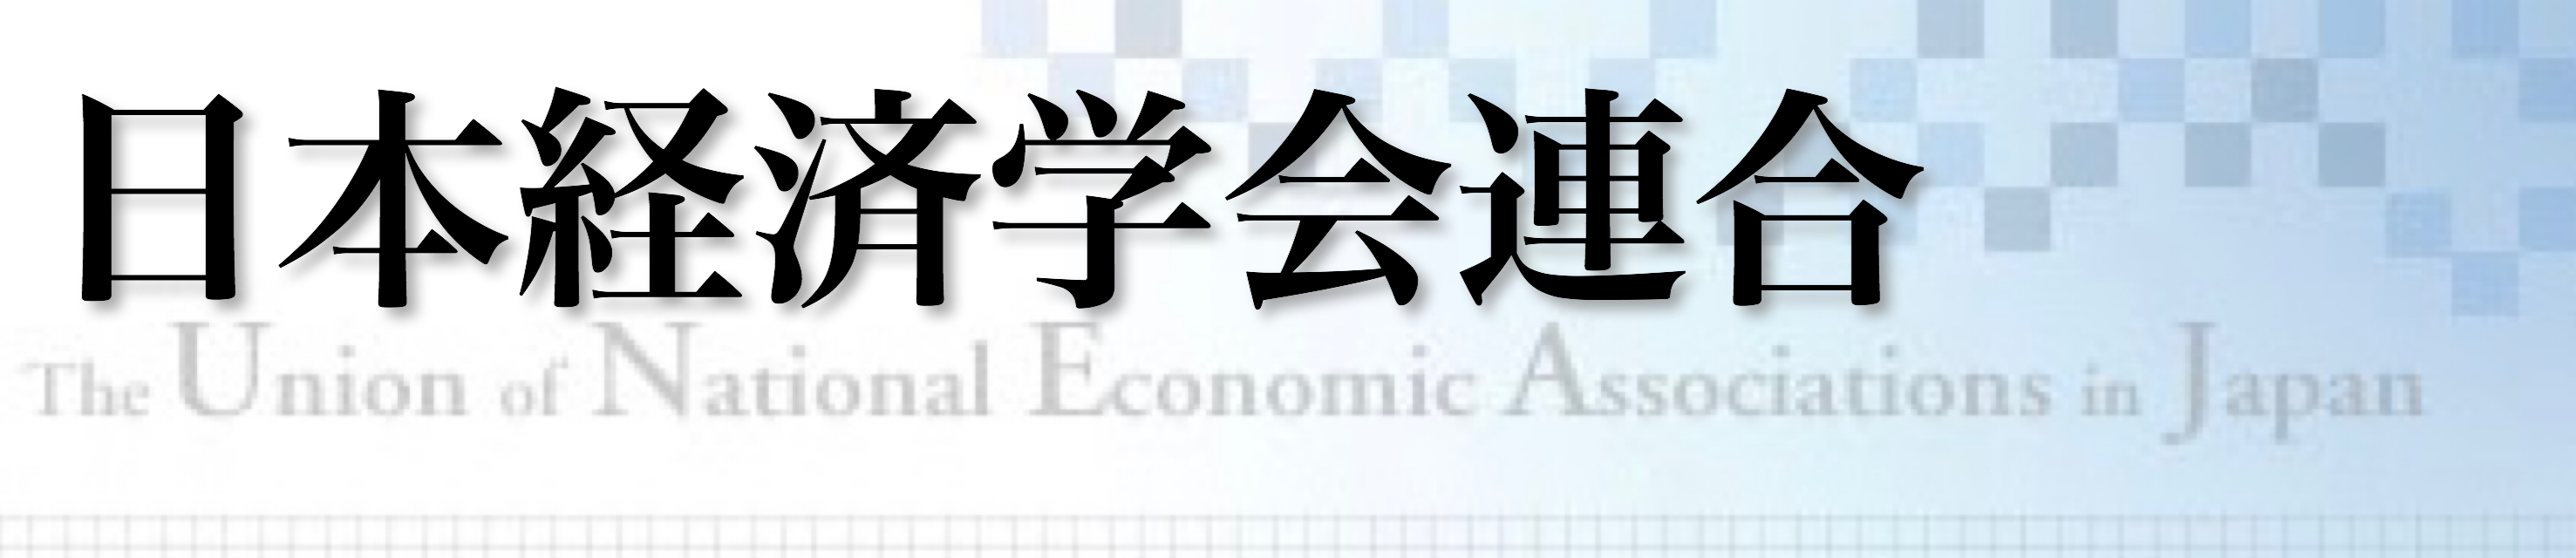 日本経済学会連合